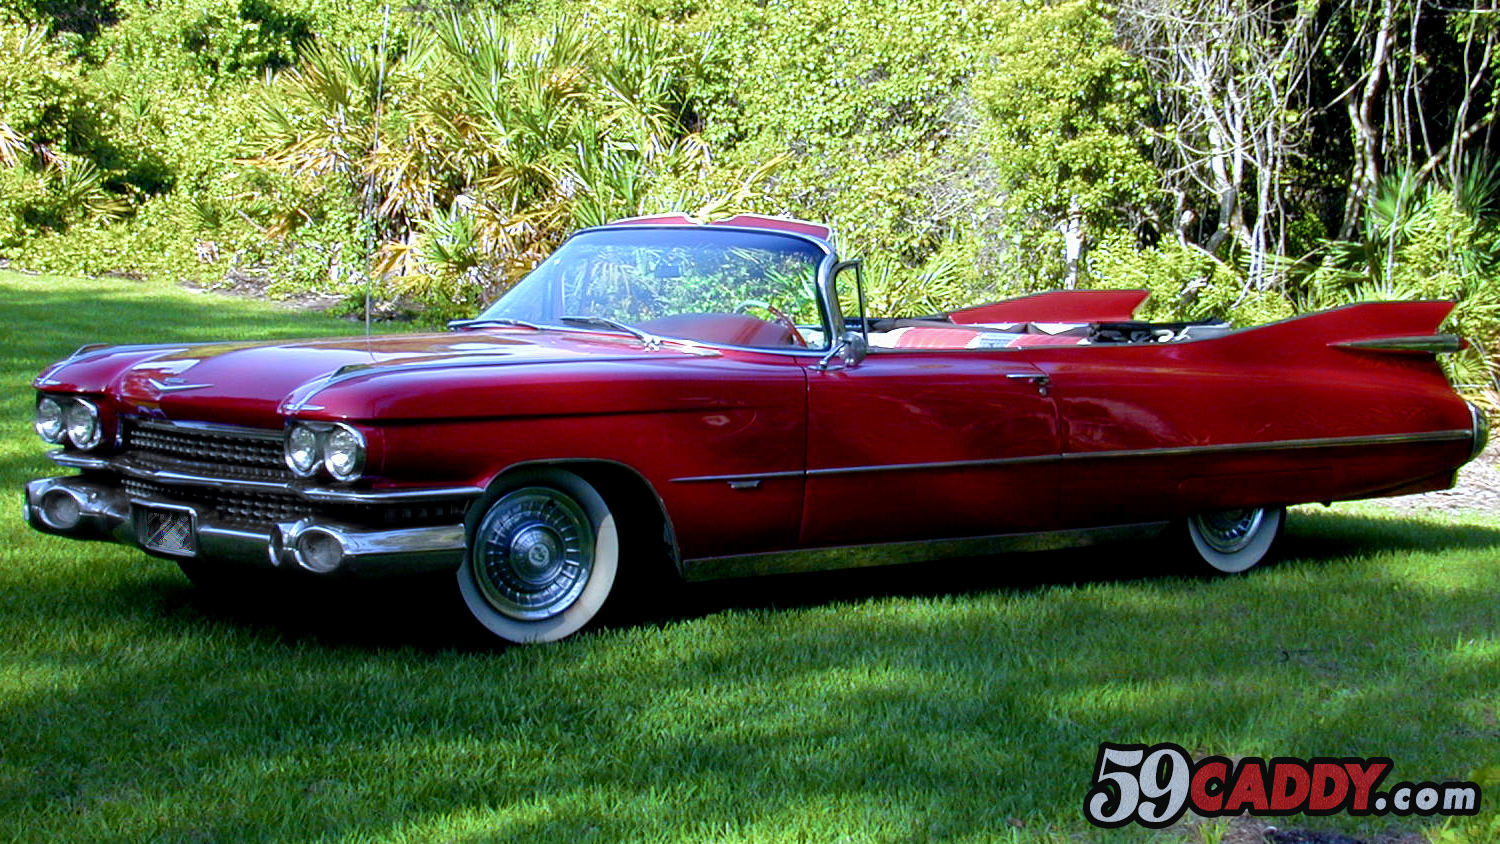 Red 1959 Cadillac Convertible